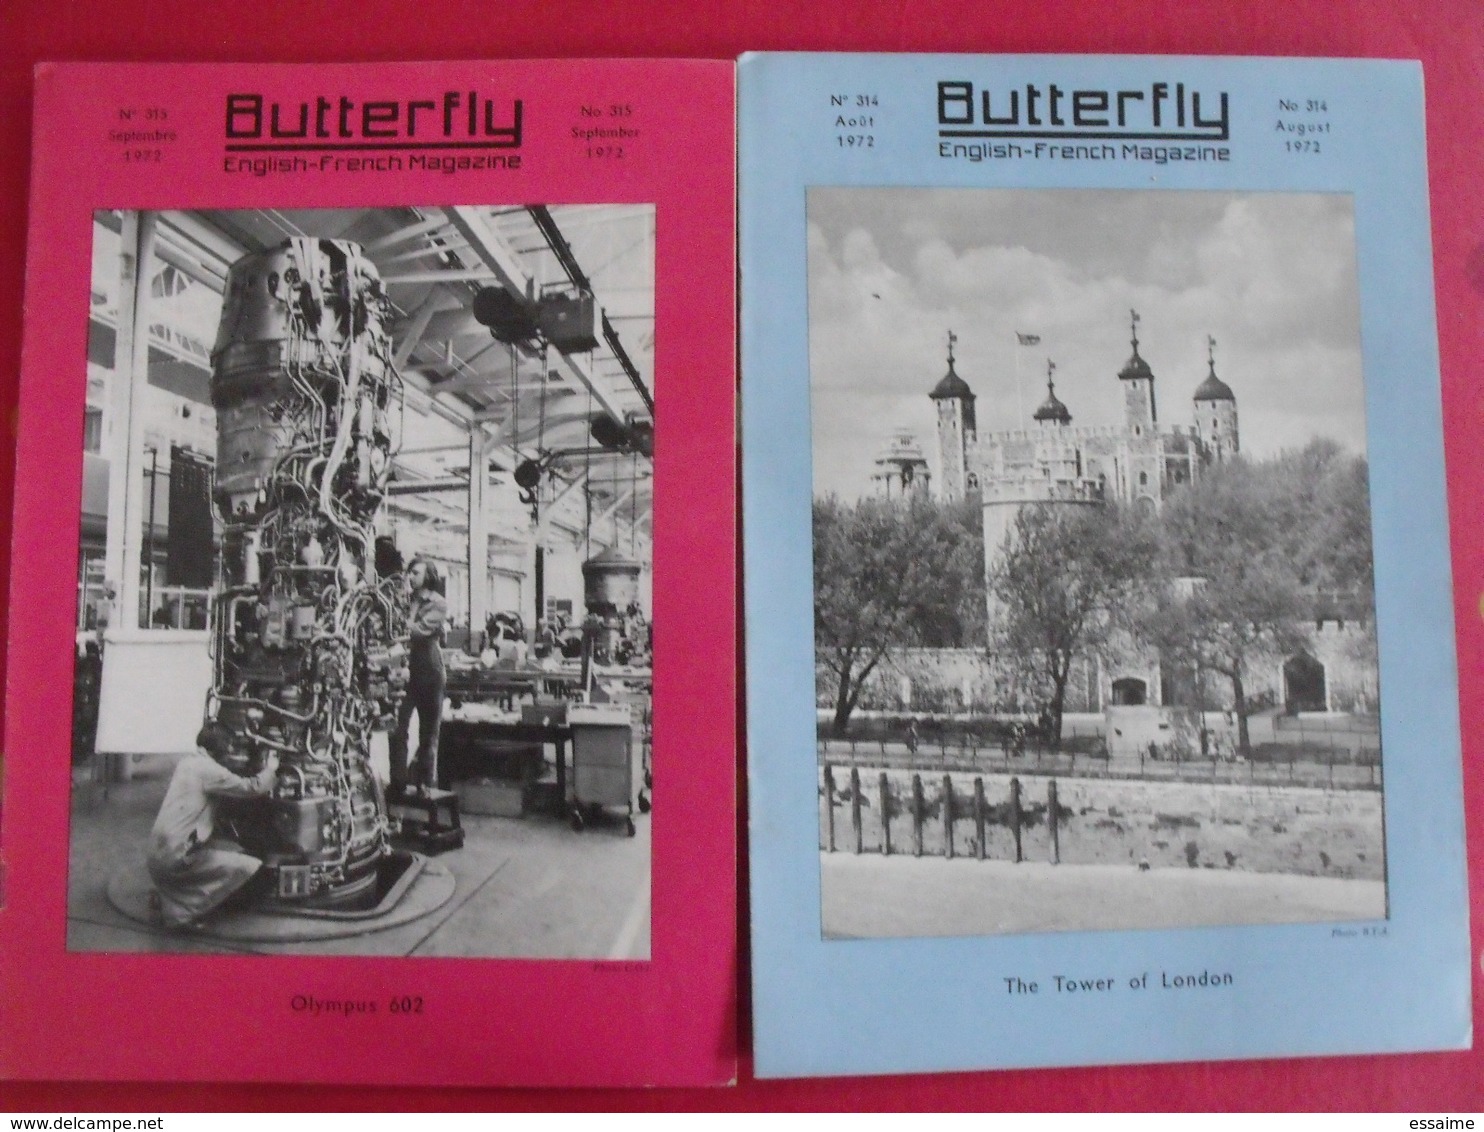 14 revues butterfly, English-French Magazine. revue pédagogique1970-1972